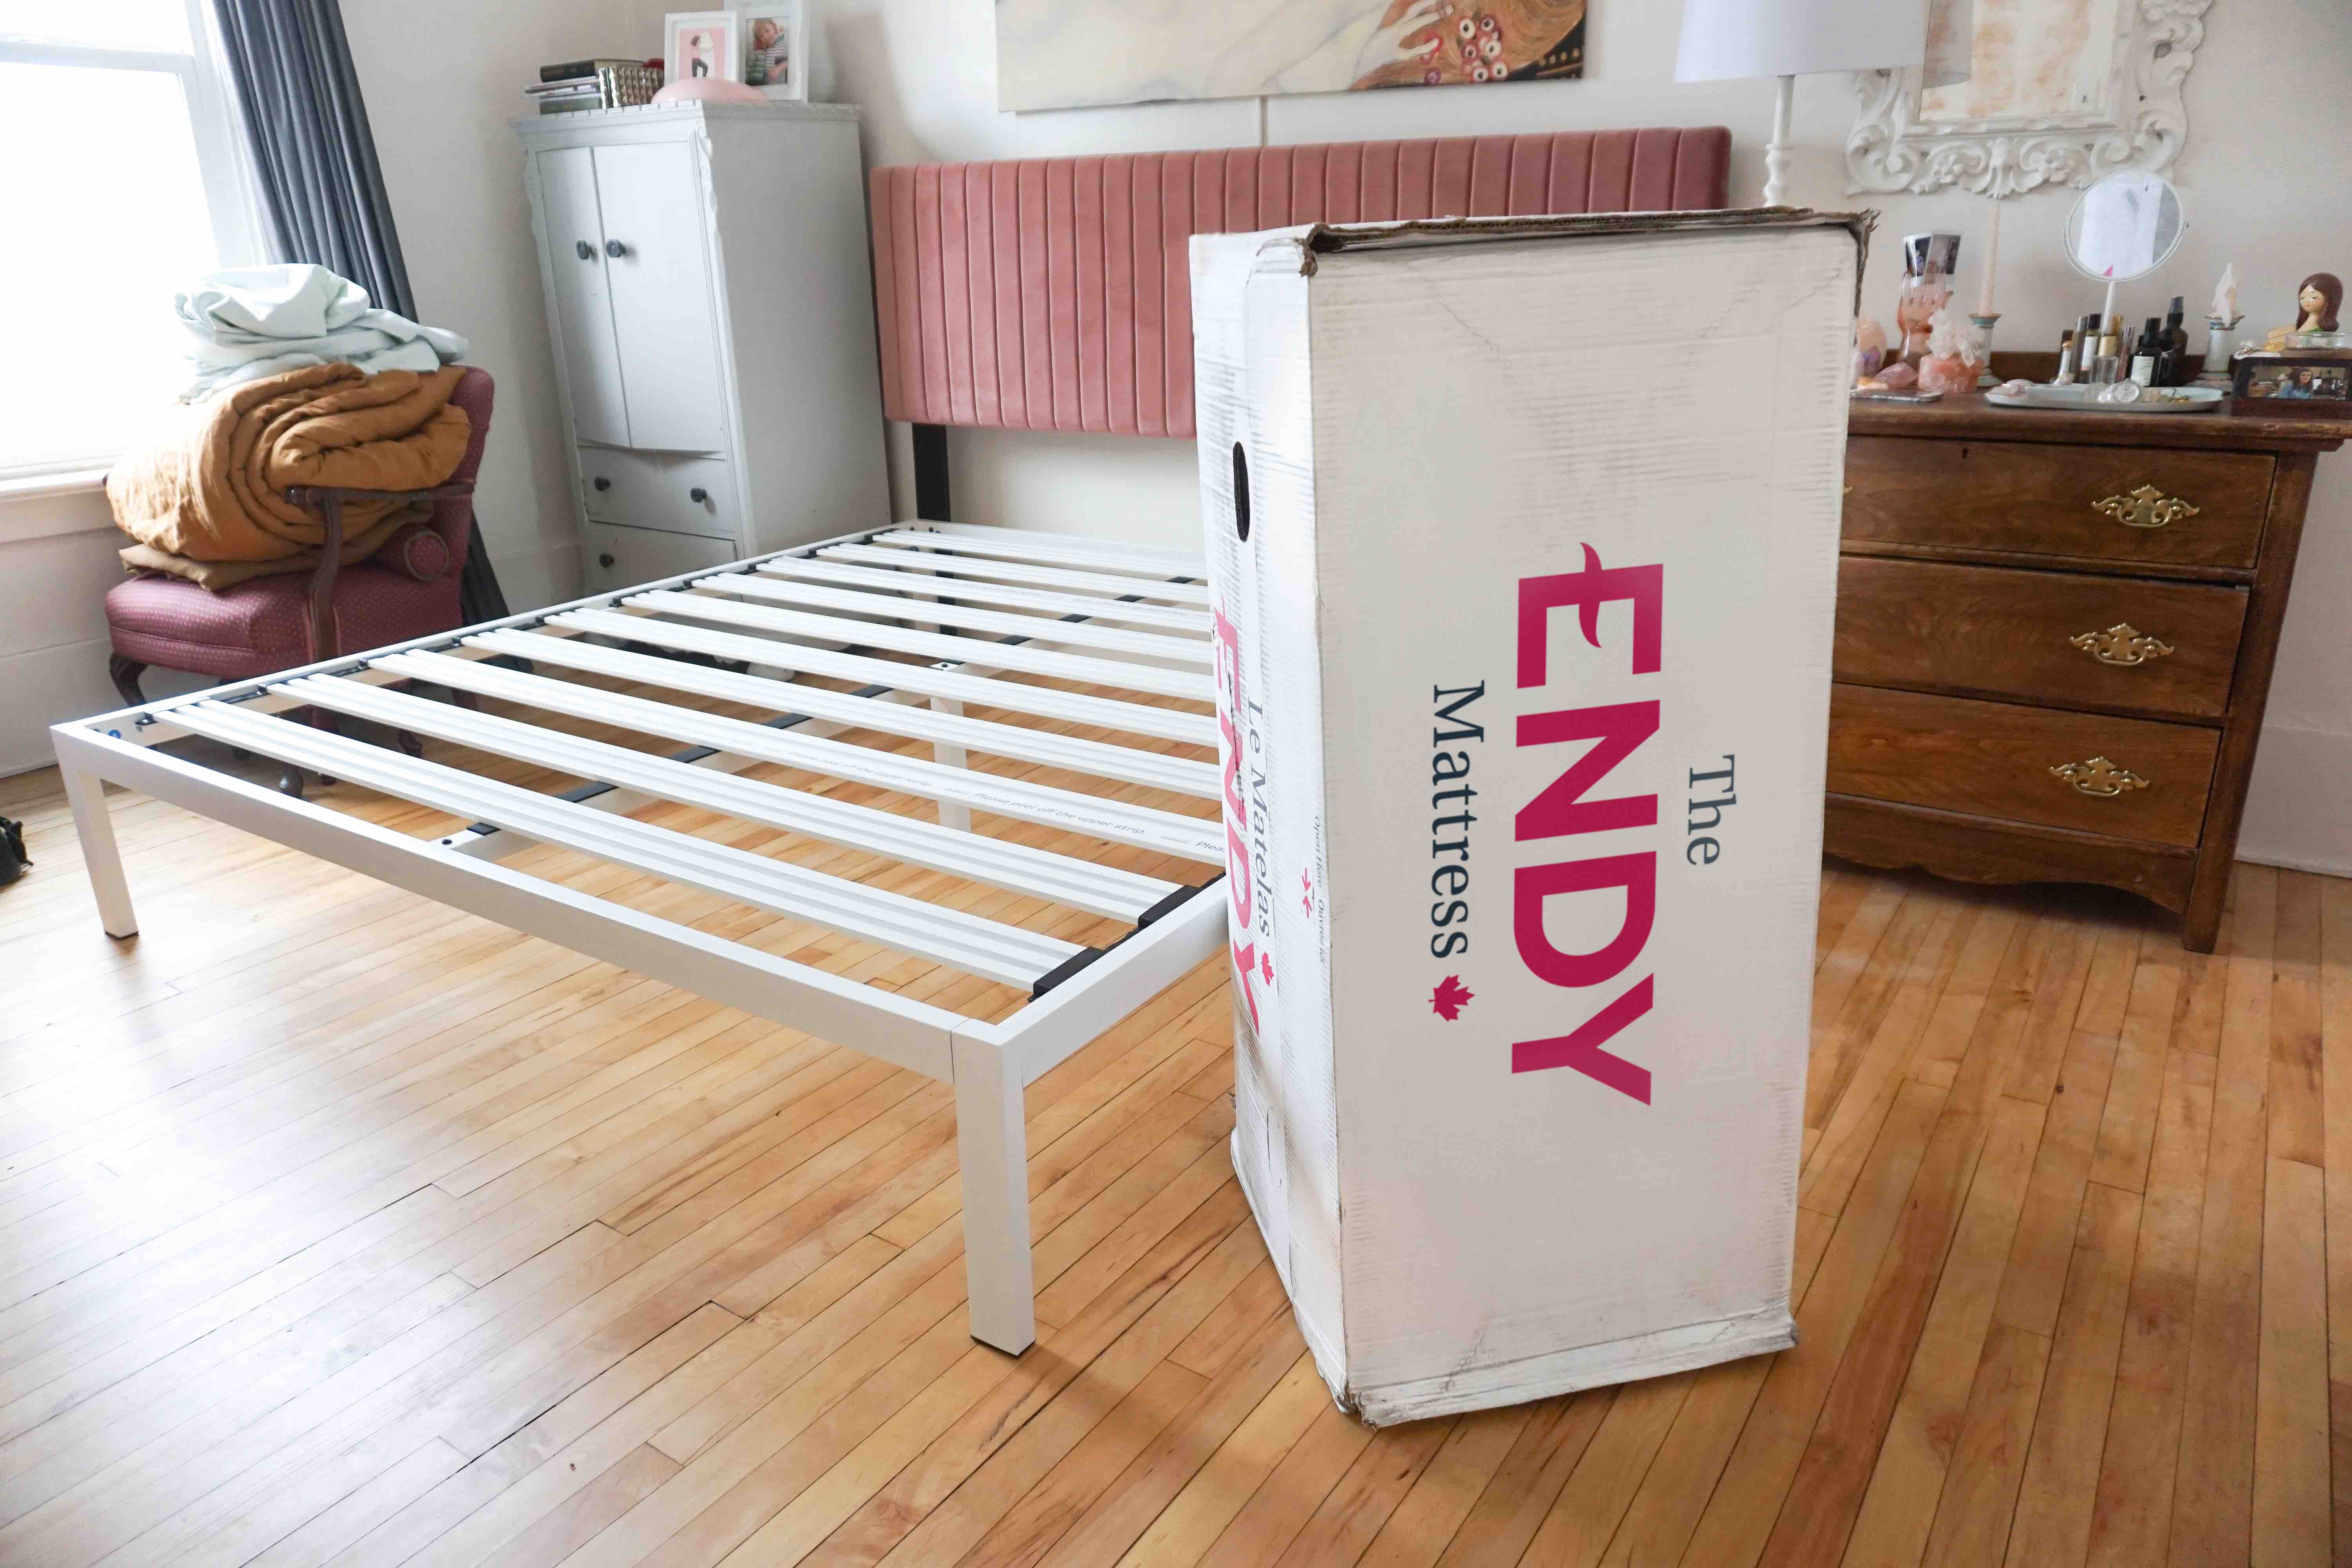 douglas vs endy mattress review